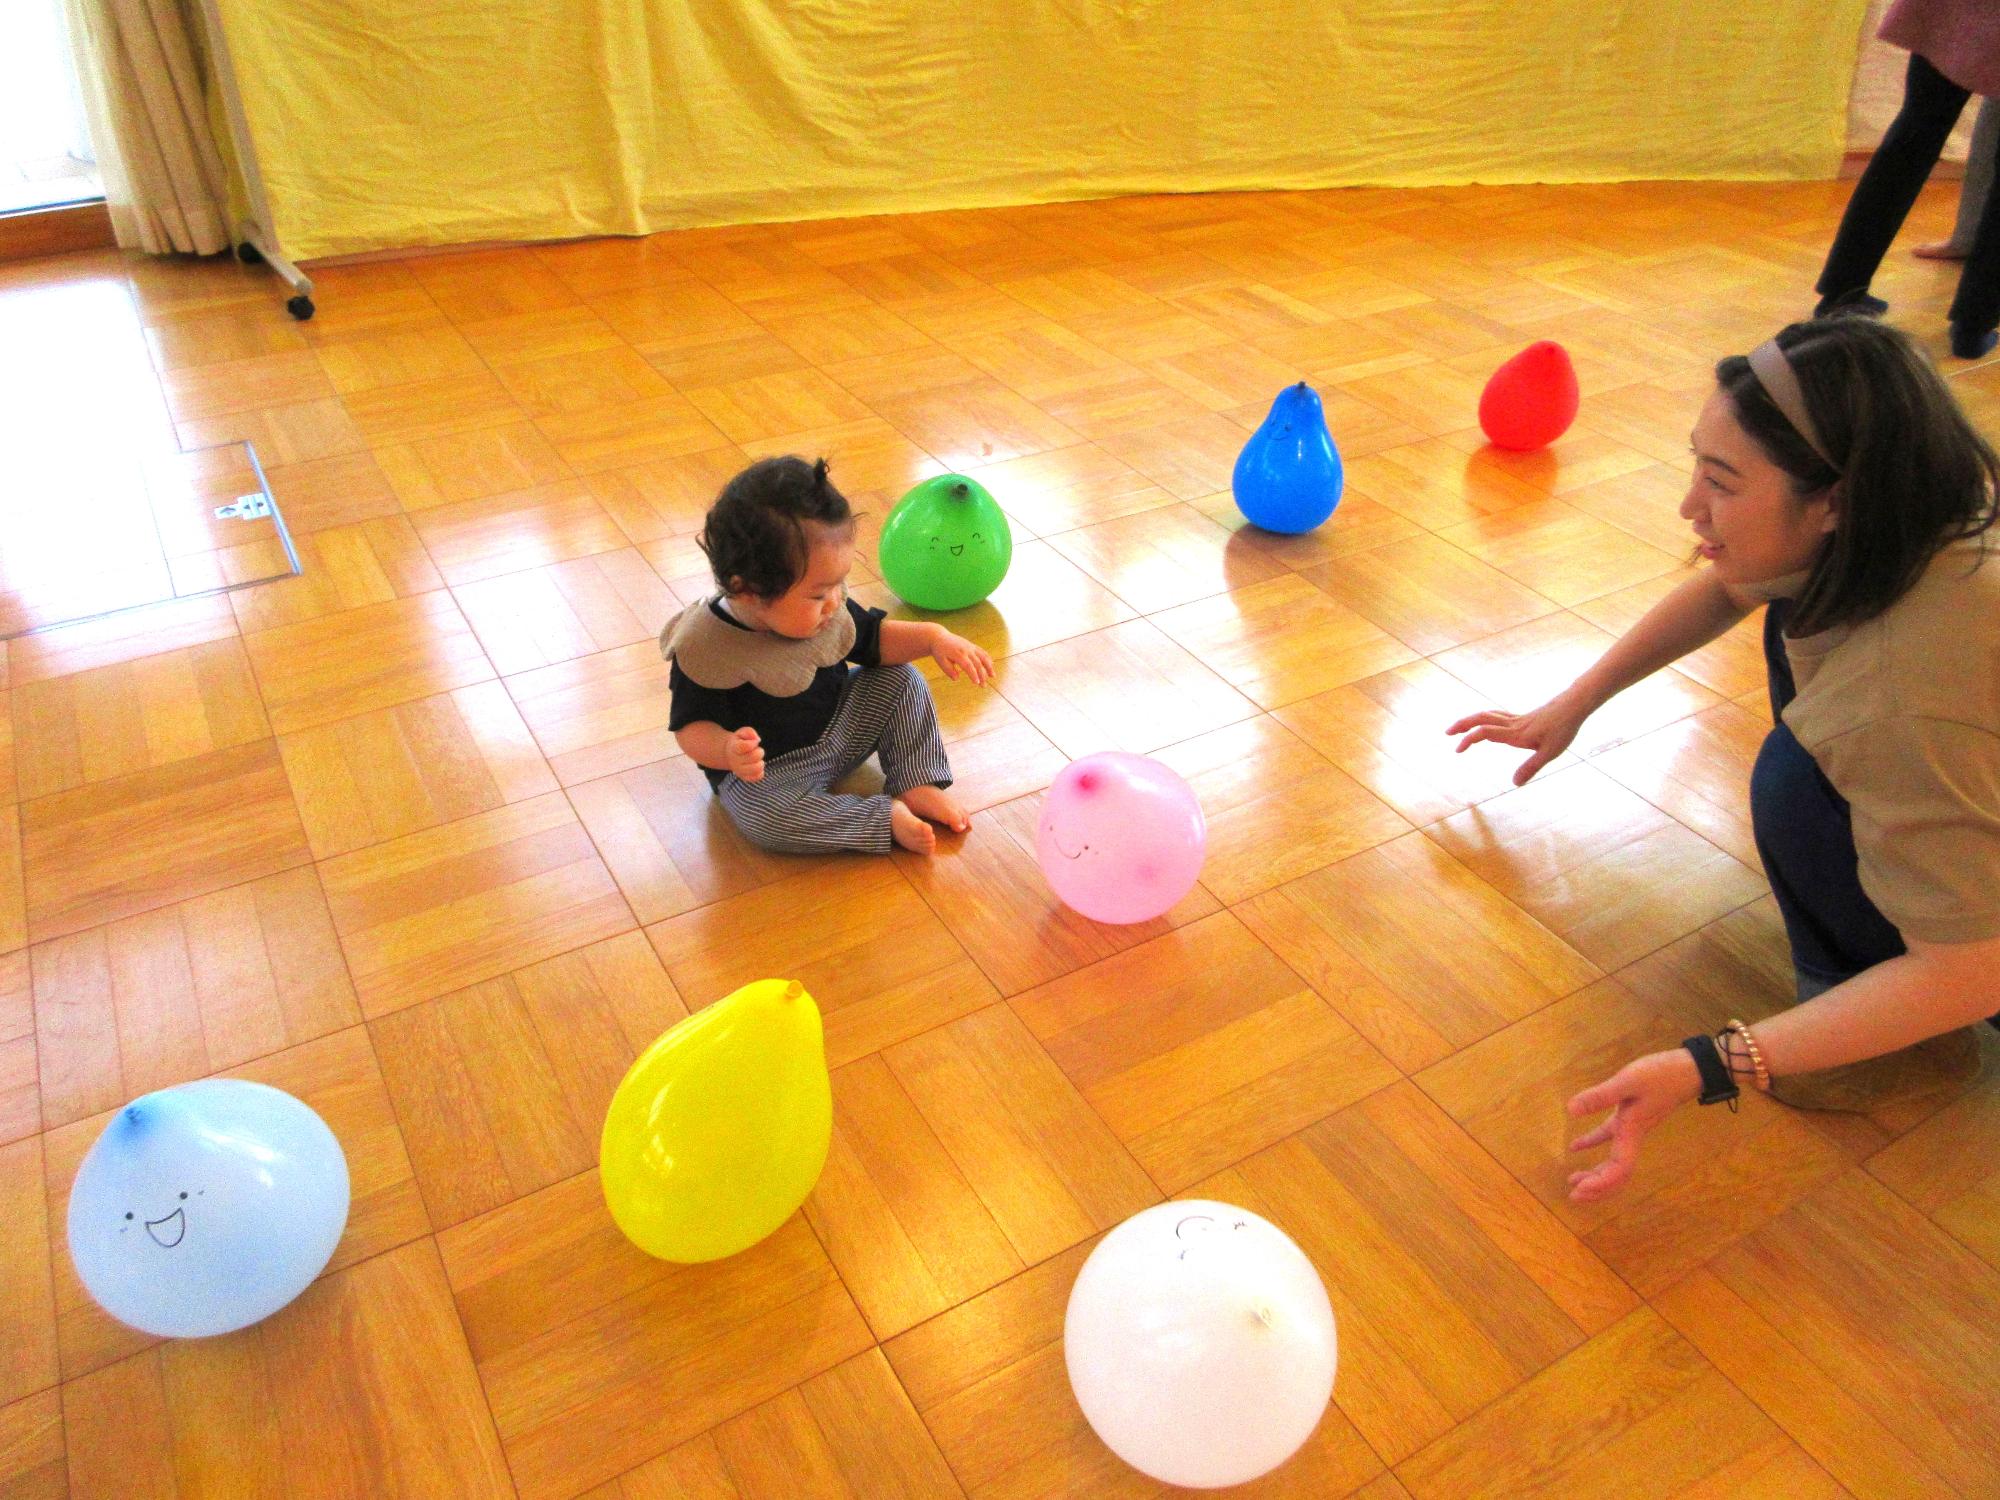 「ちびあおむしくんの日」風船を使ったふれあい遊びを楽しむ親子の写真